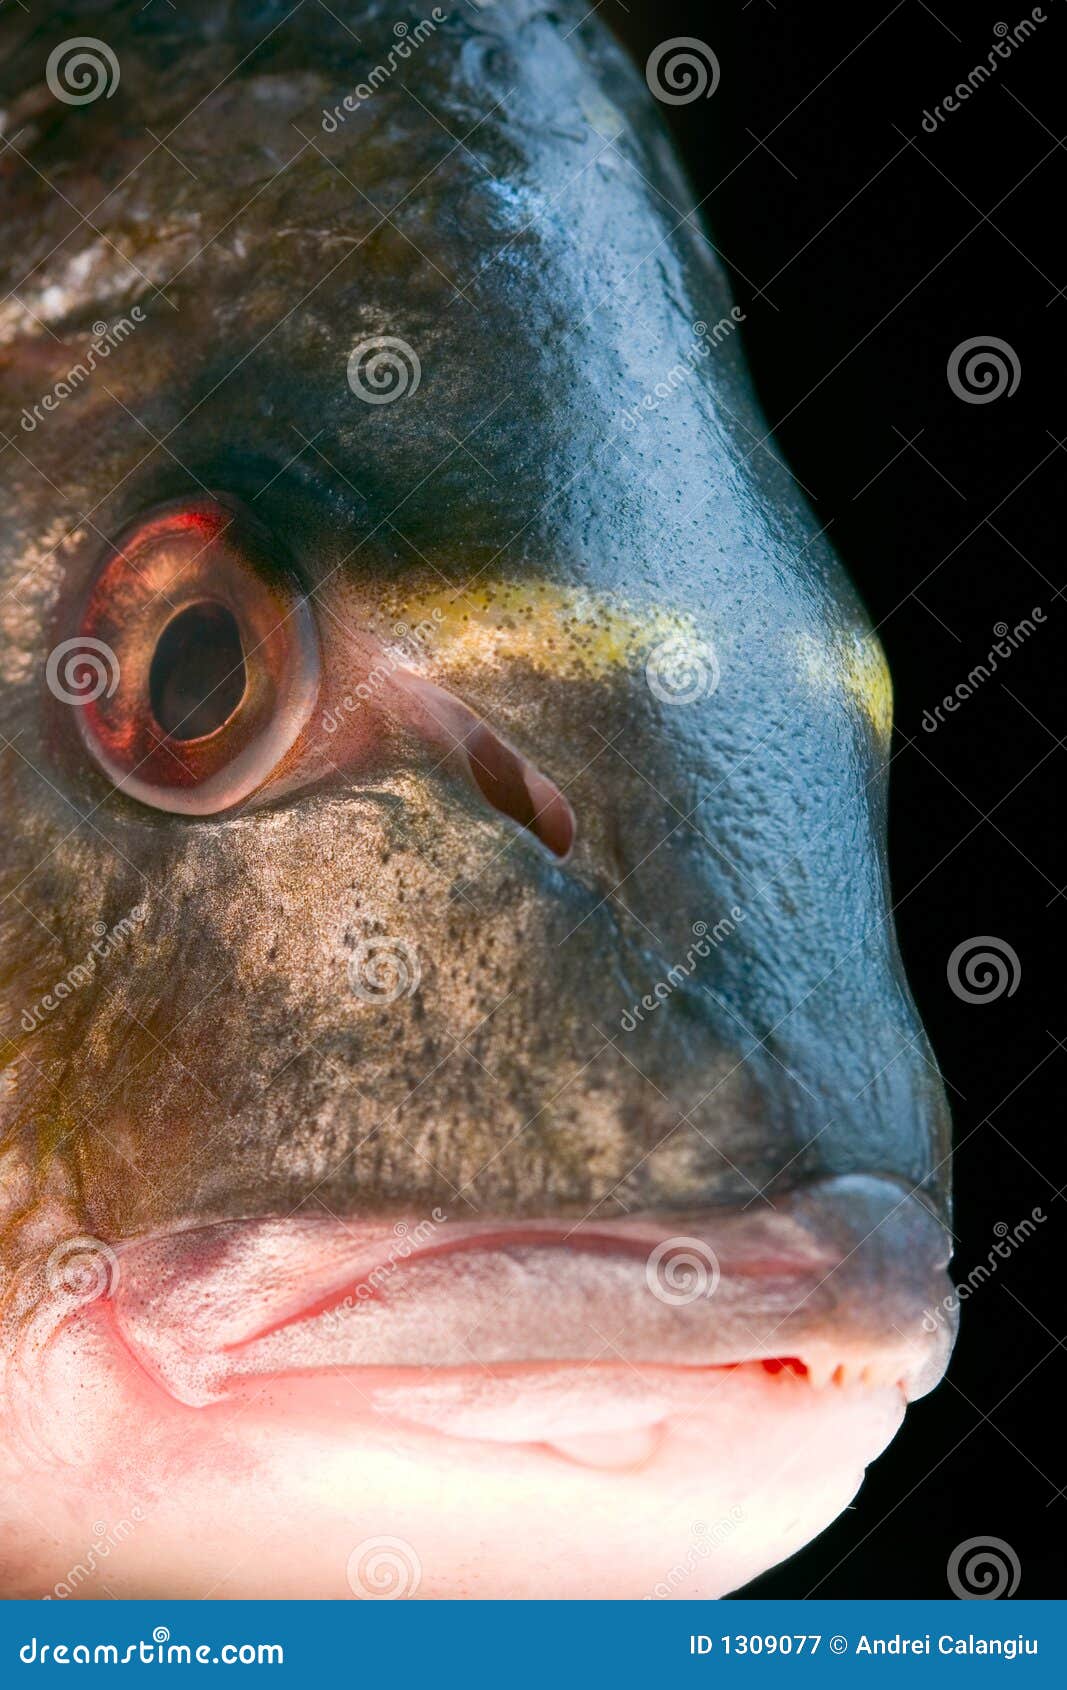 gilt-head sea bream fish